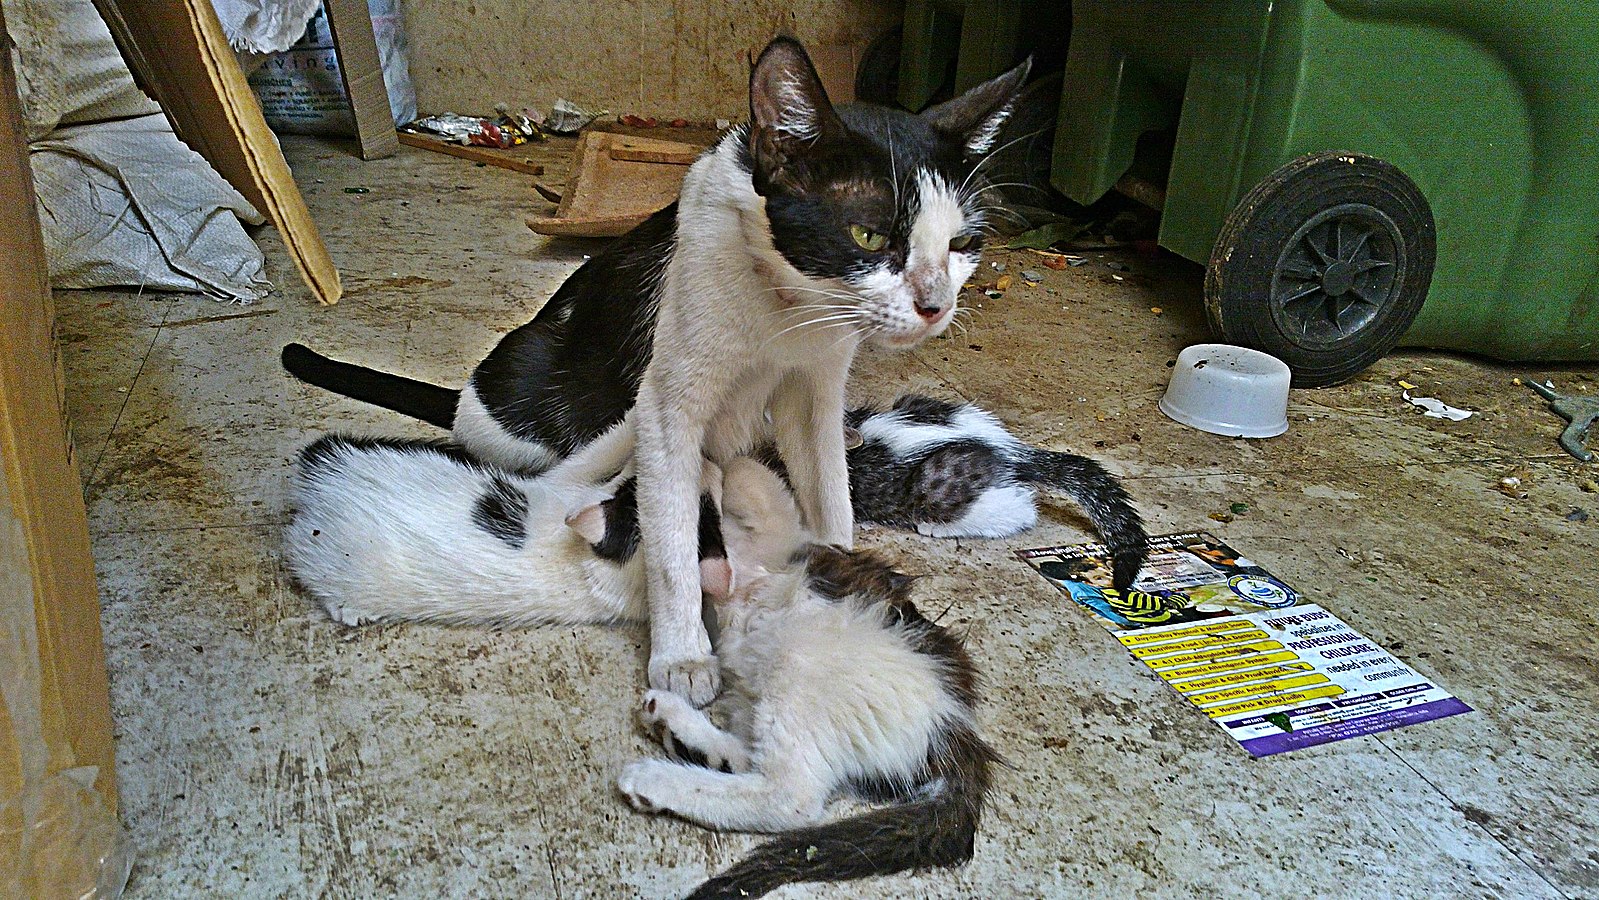 stray feeding kittens. Vikram2784 CC0 1.0